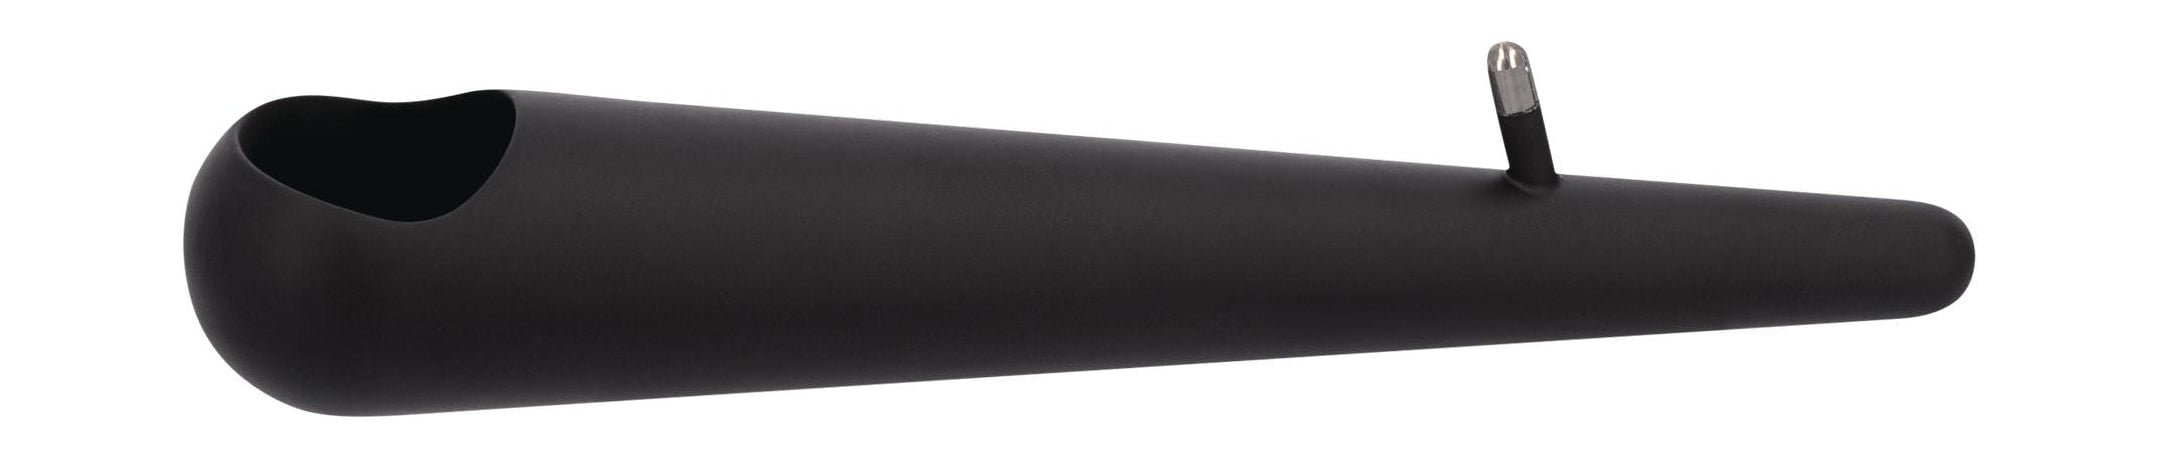 Uyuni Lighting篝火蜡烛支架1'armø14,5厘米，马特黑色